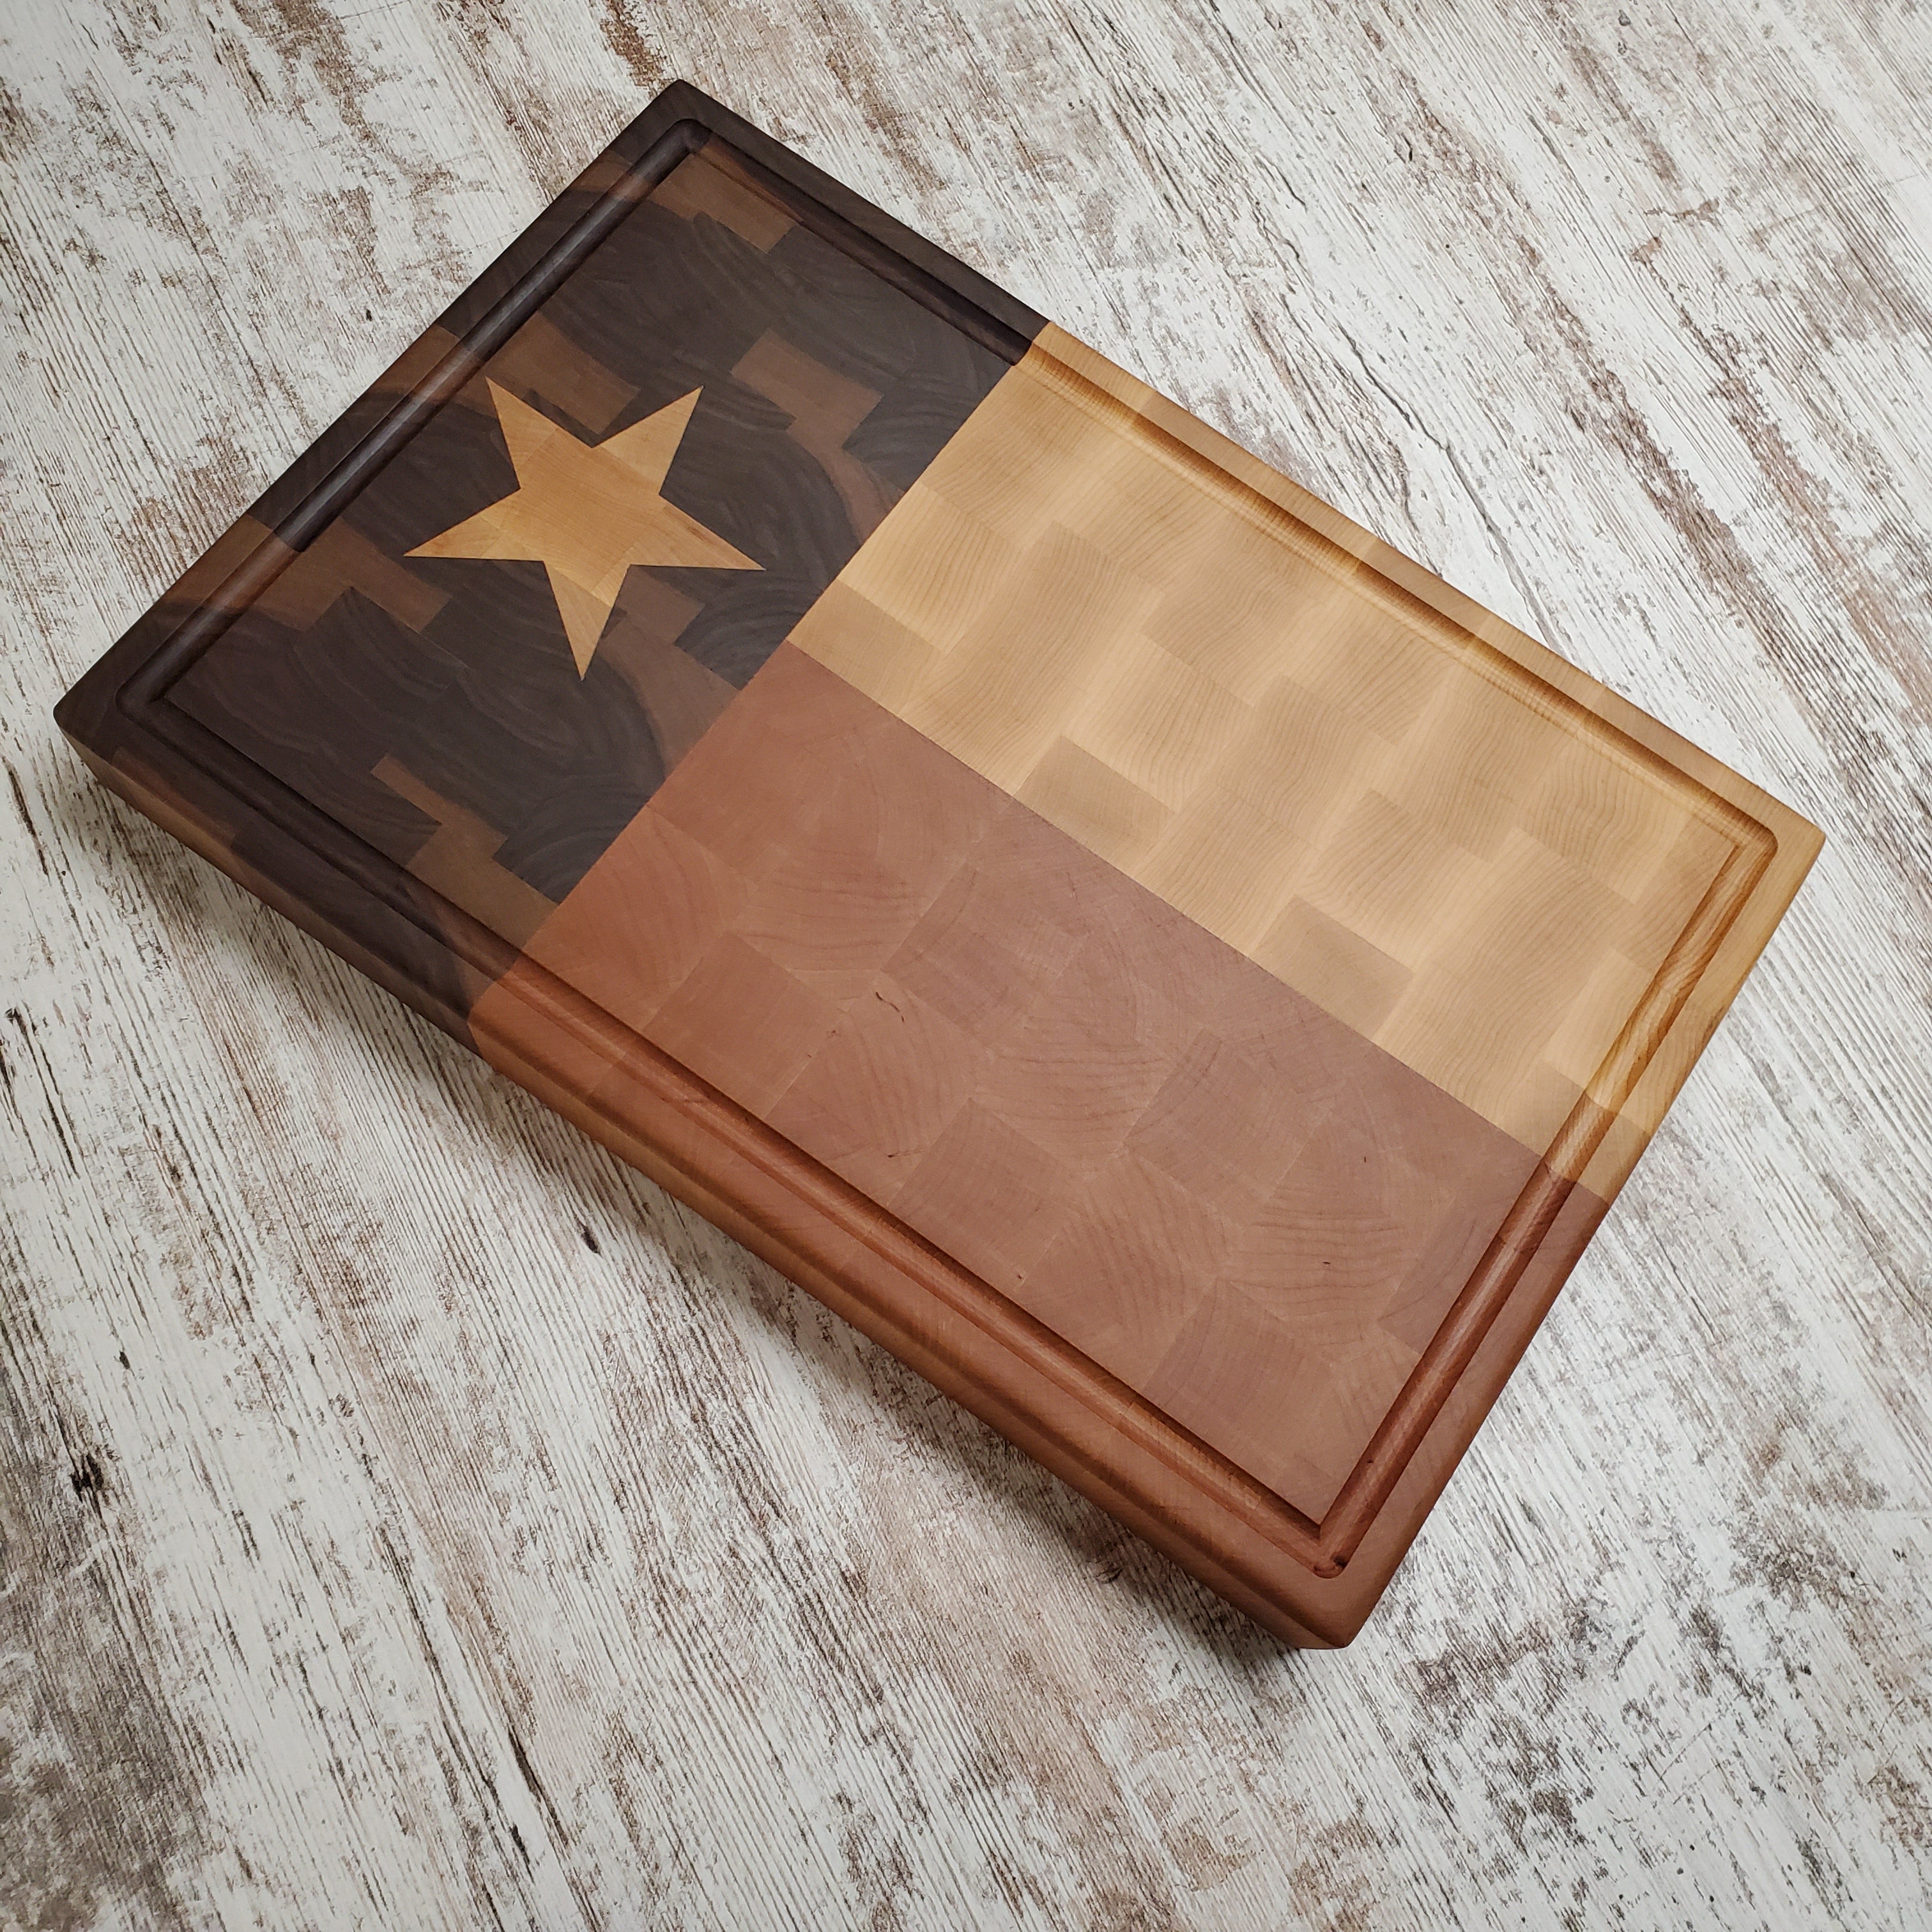 Texas flag chopping block